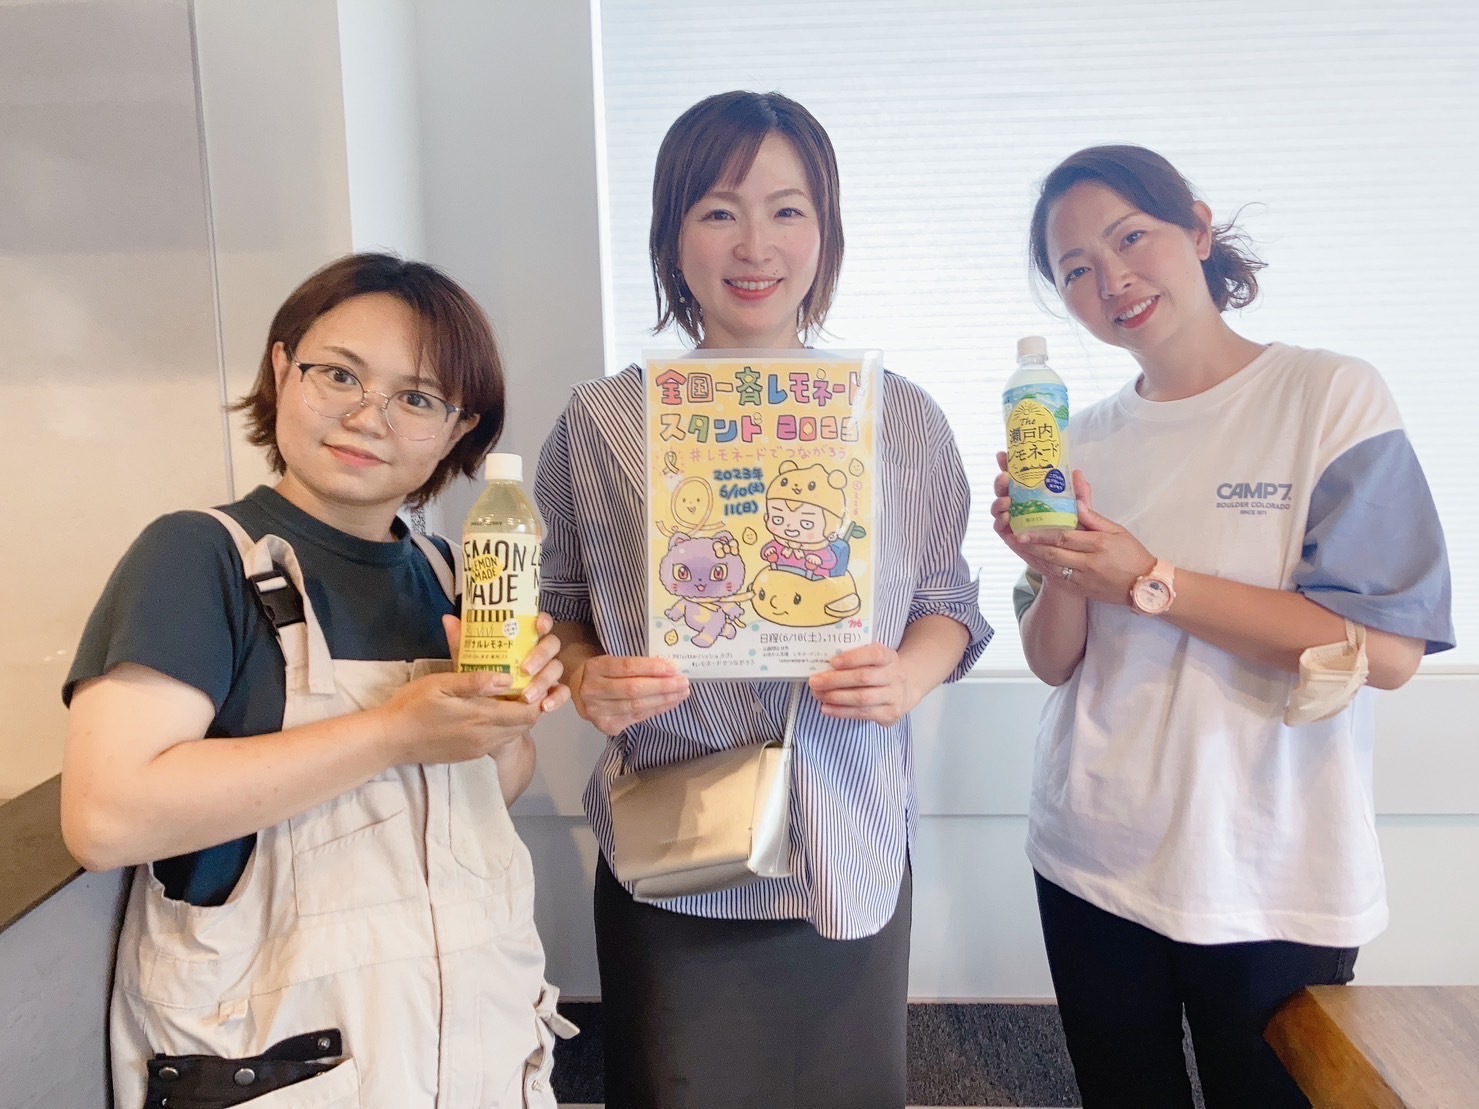 写真中央が代表の佐藤麻紀子さん。